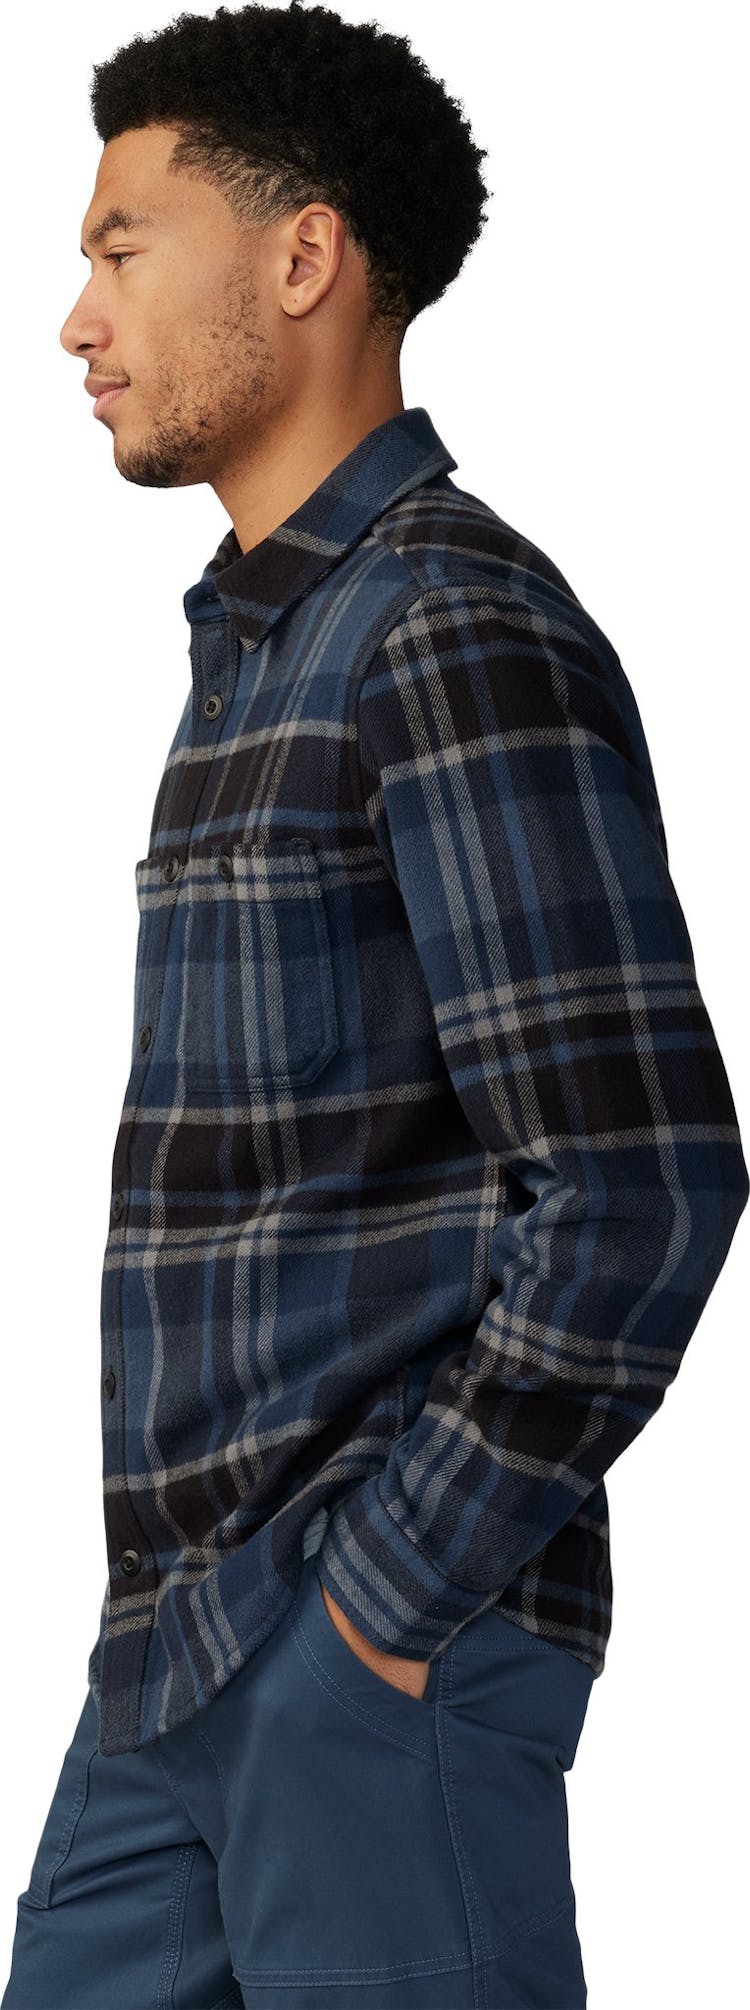 Numéro de l'image de la galerie de produits 6 pour le produit Chemise à manches longues Plusher™ - Homme